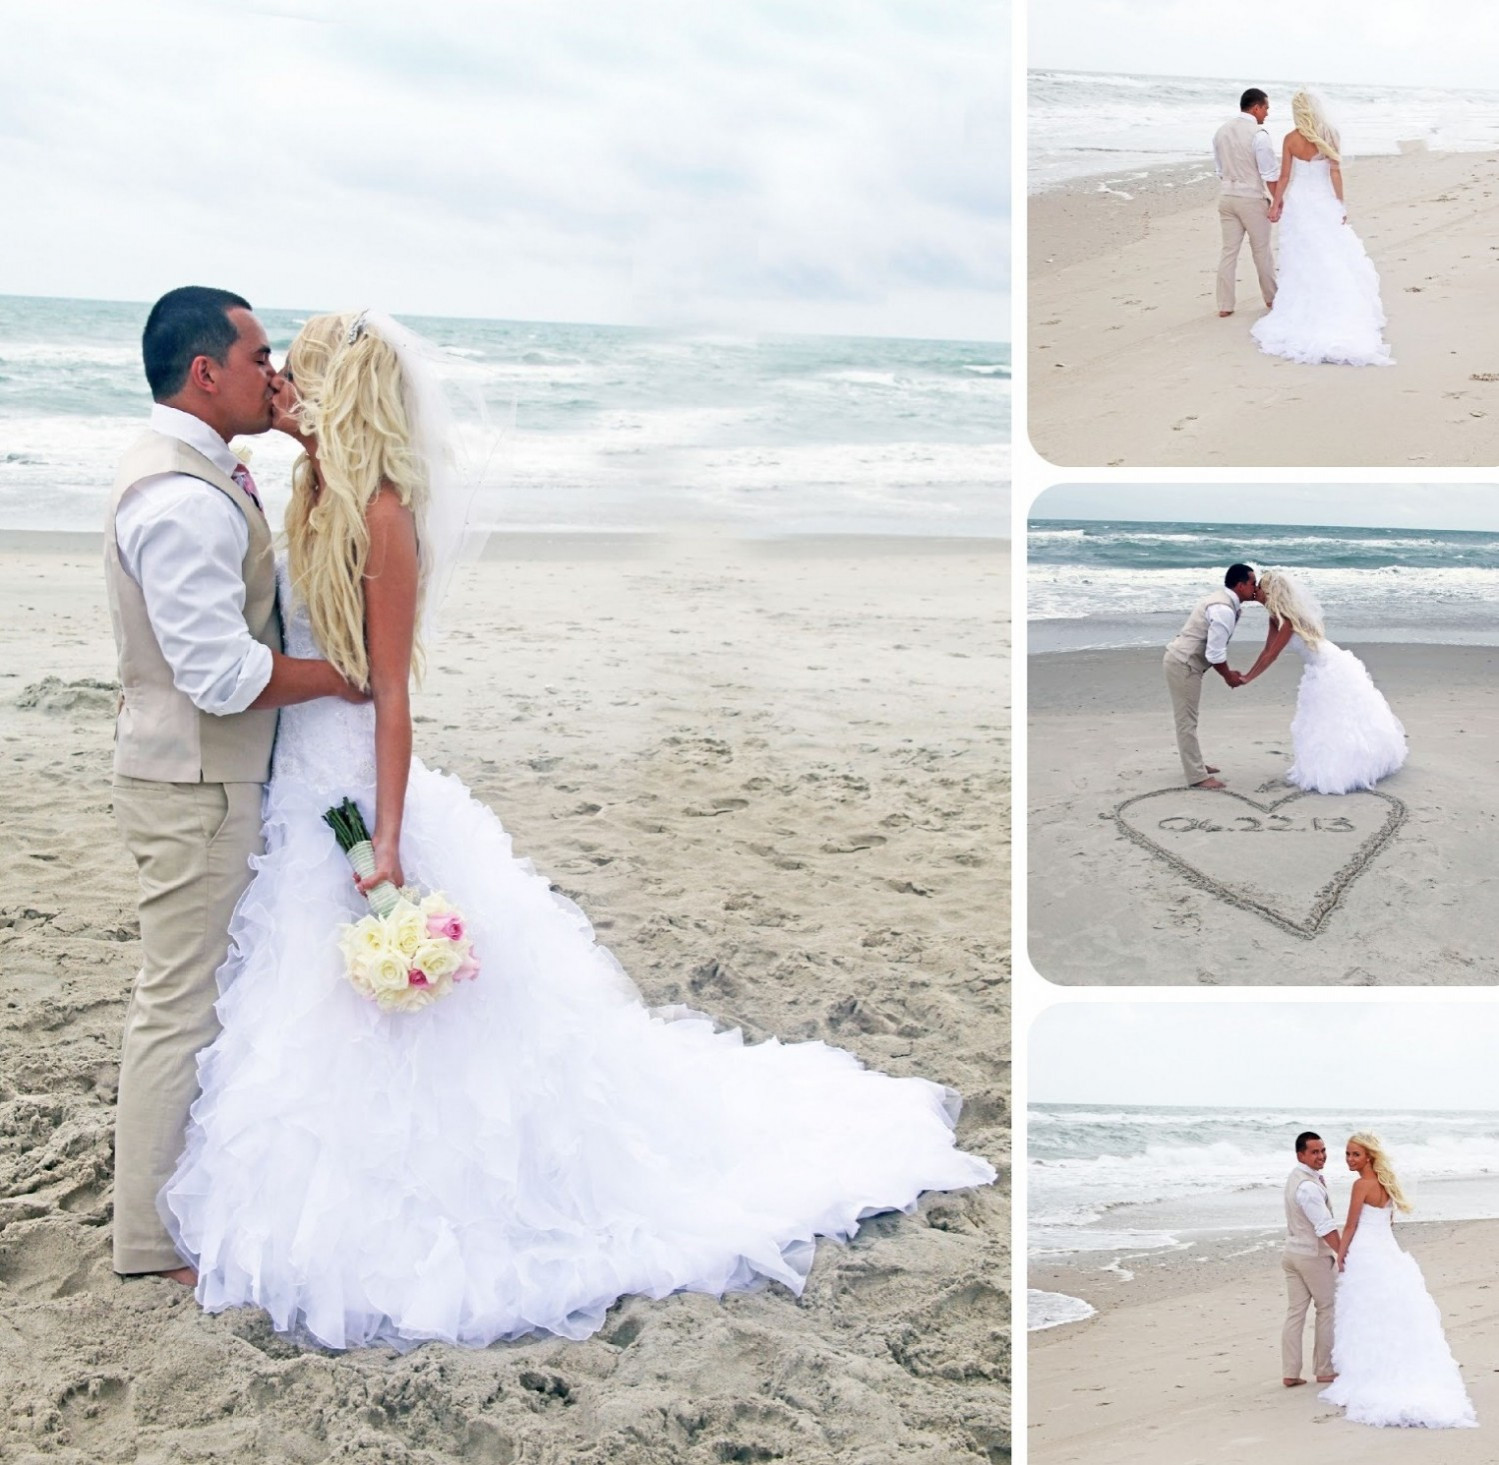 Свадебная пляжная фотосессия идеи